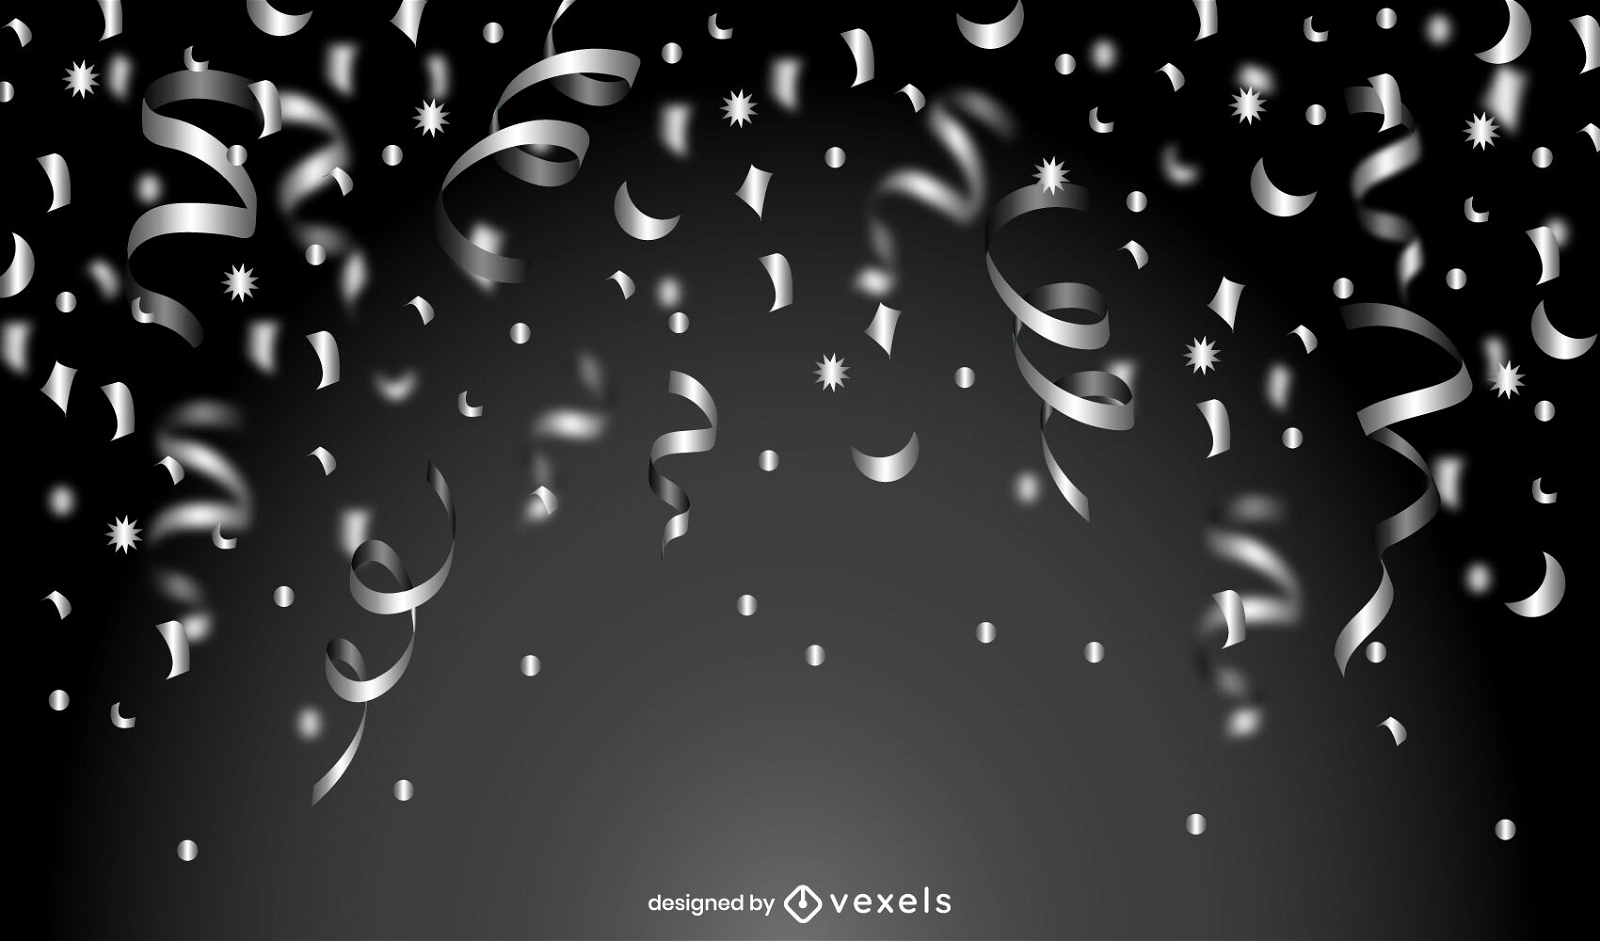 Greyscale confetti celebration background